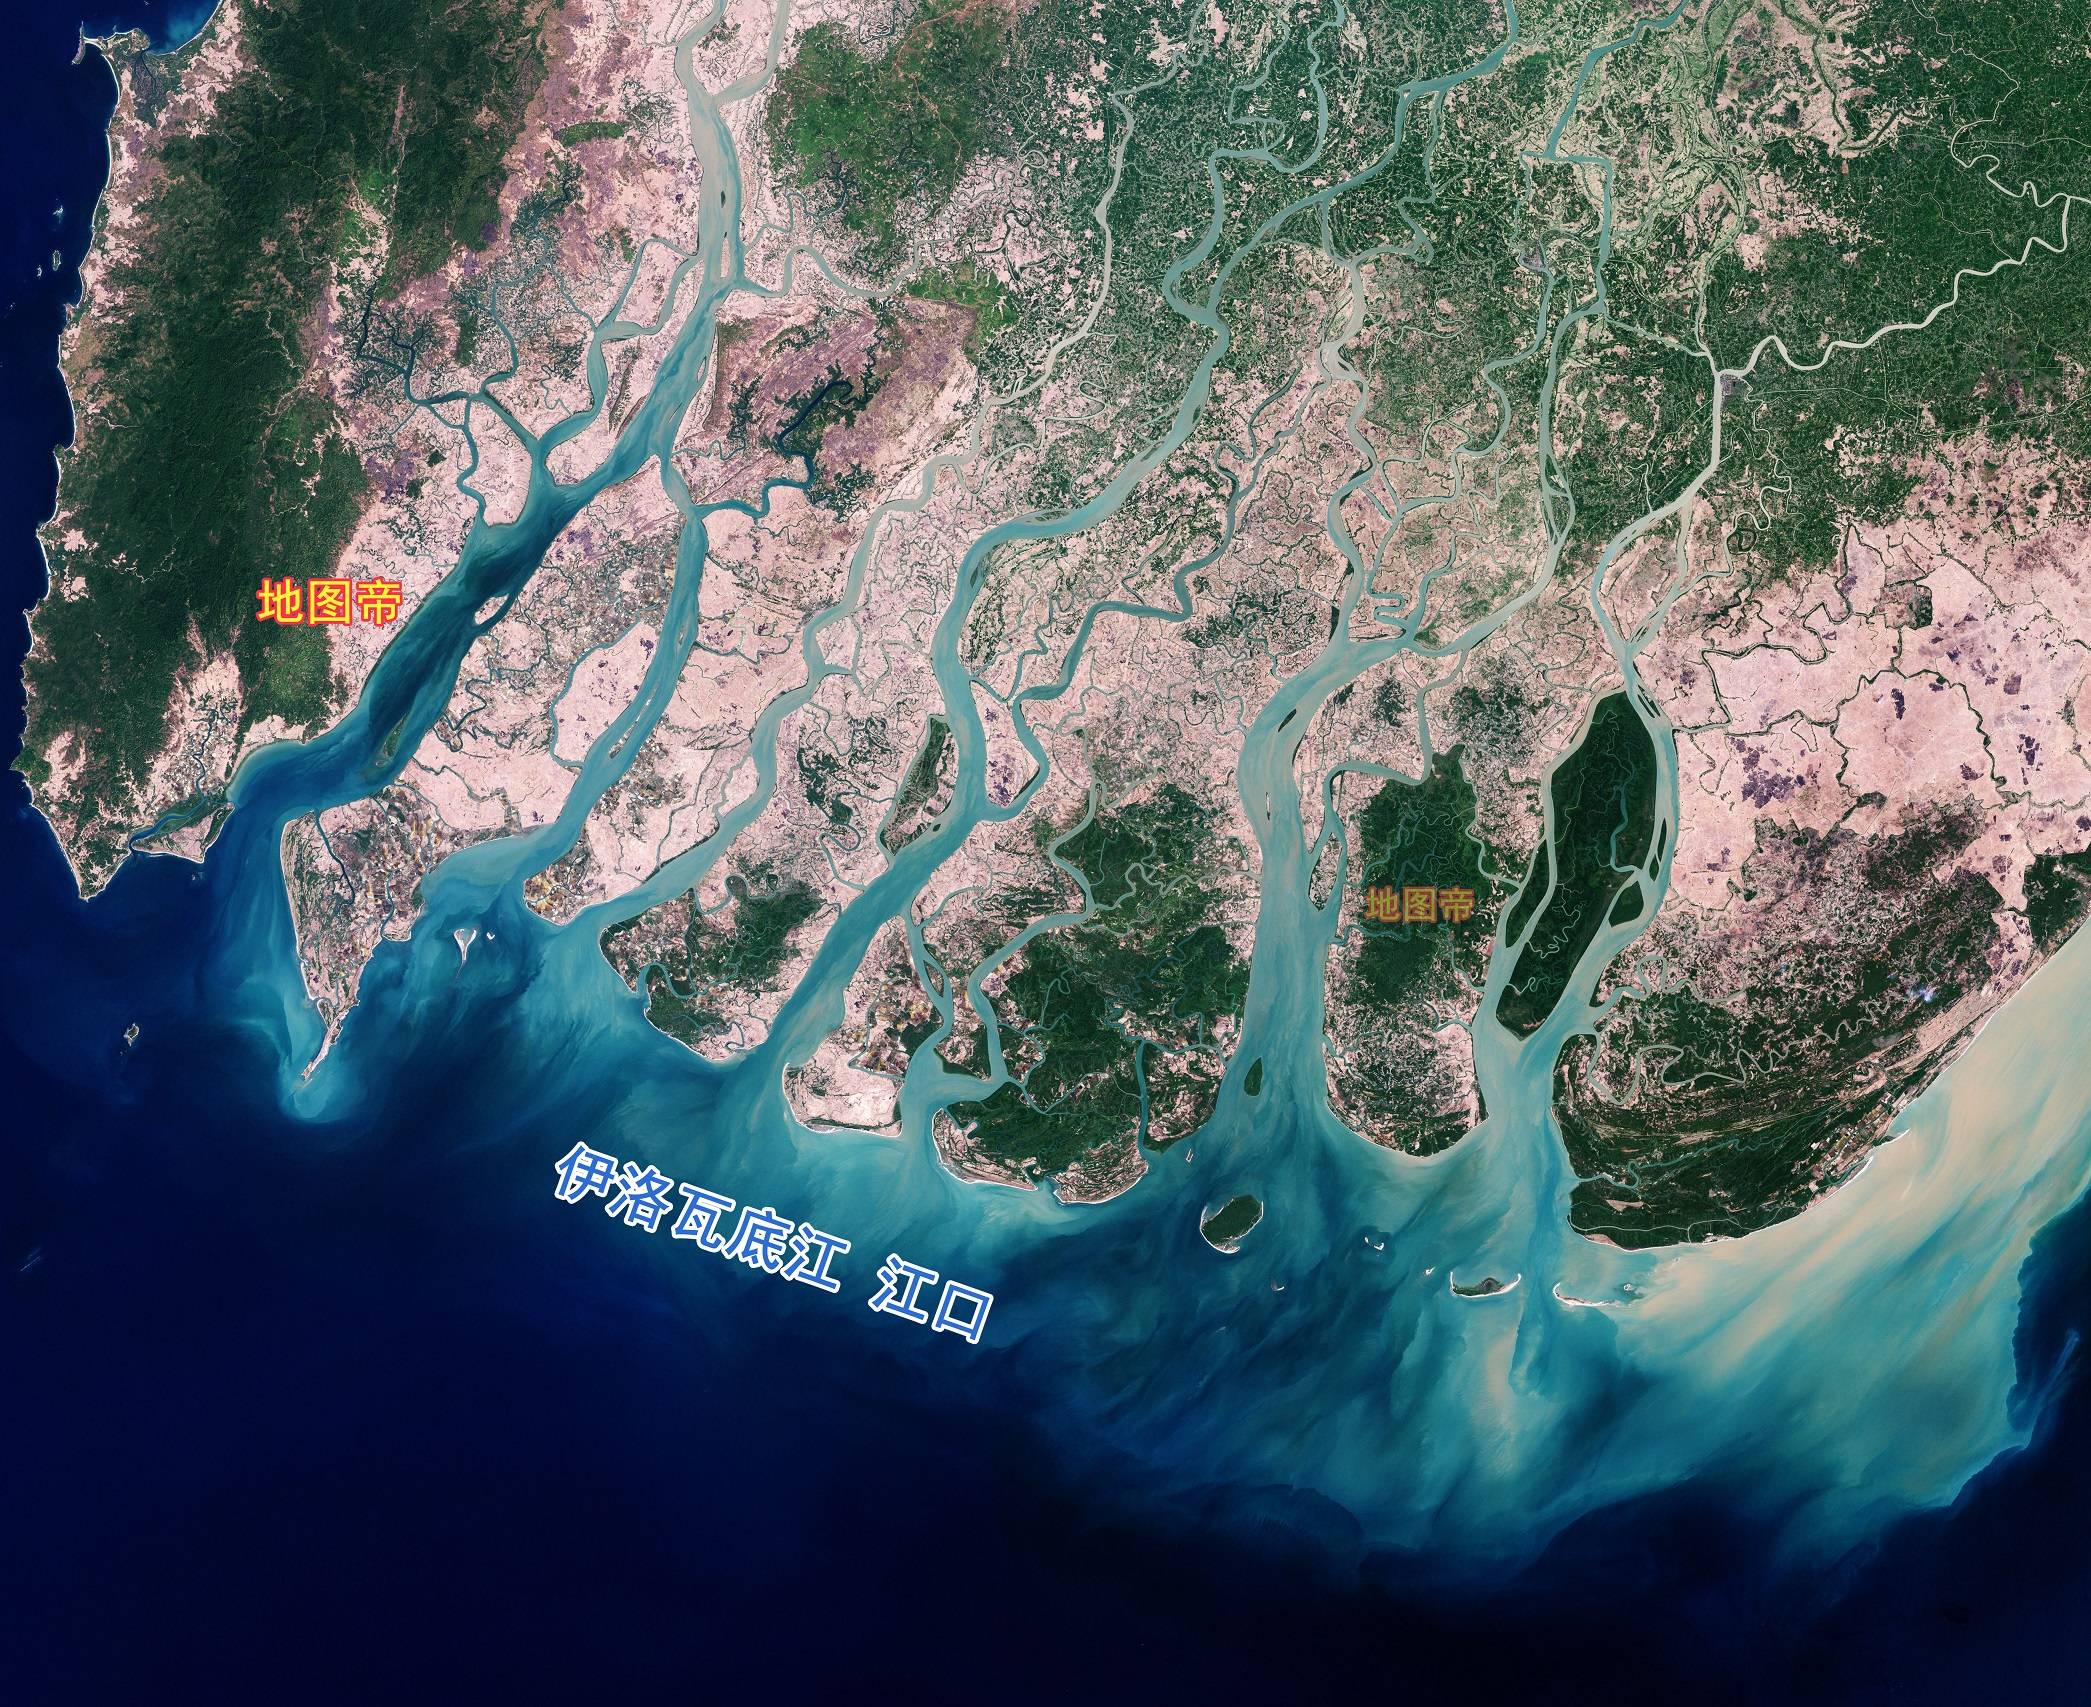 缅甸母亲河伊洛瓦底江,全长约2170公里,平均水量约为1